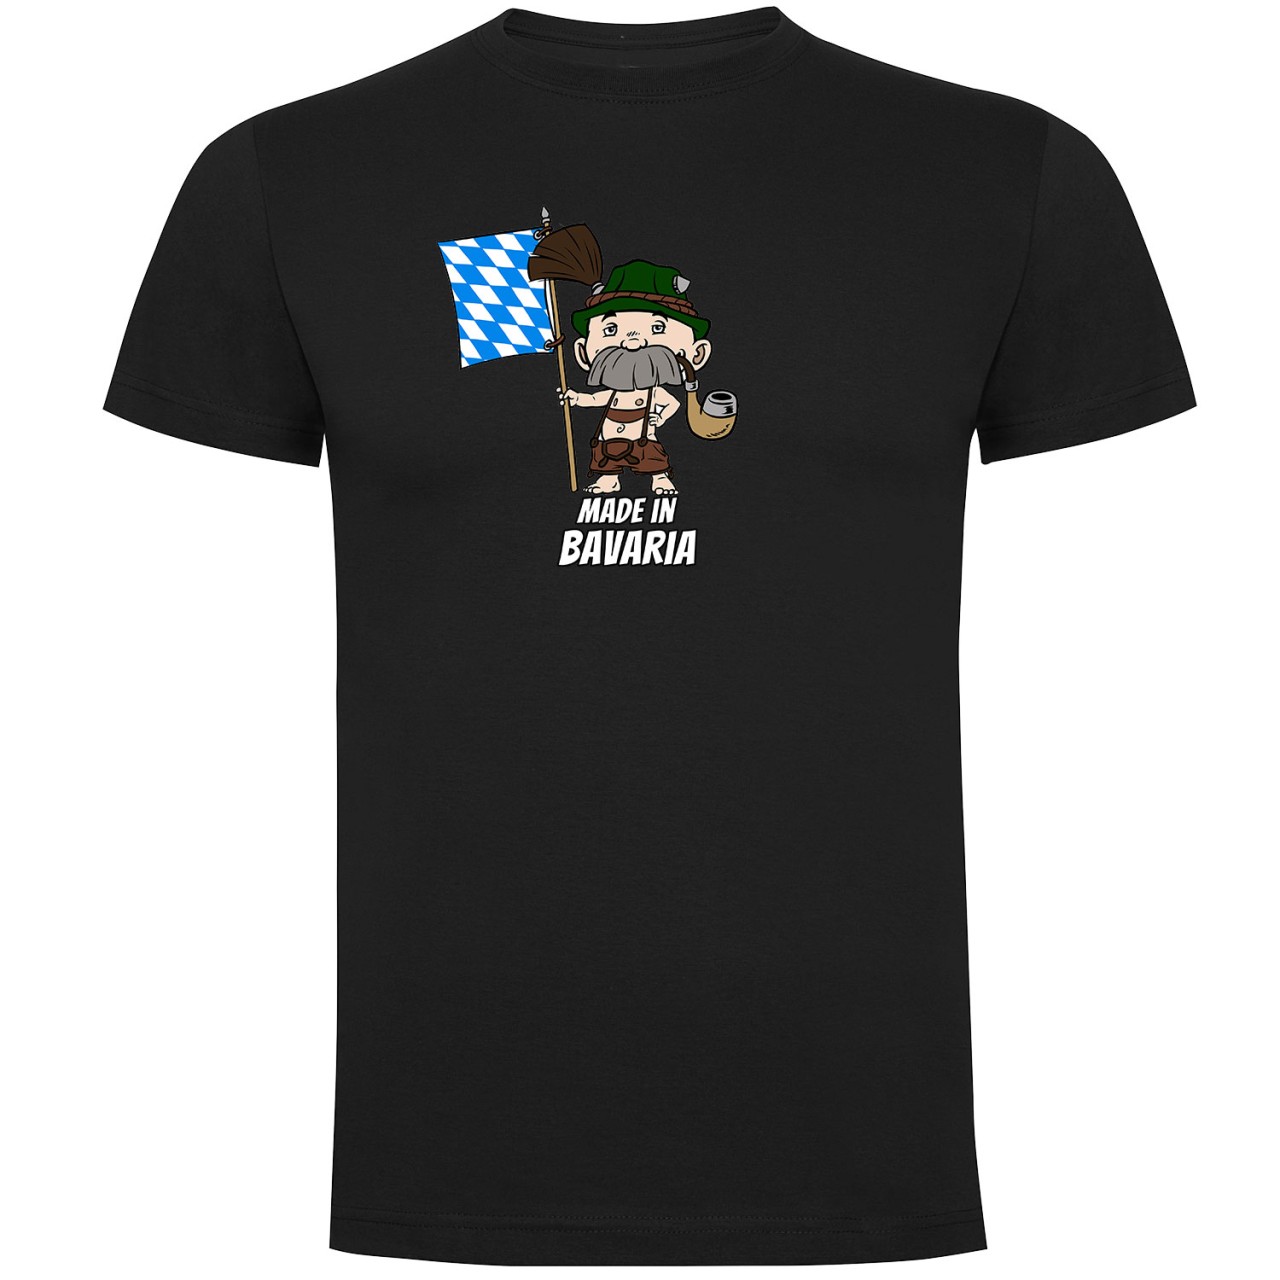 Made in Bavaria Kinder T-shirt